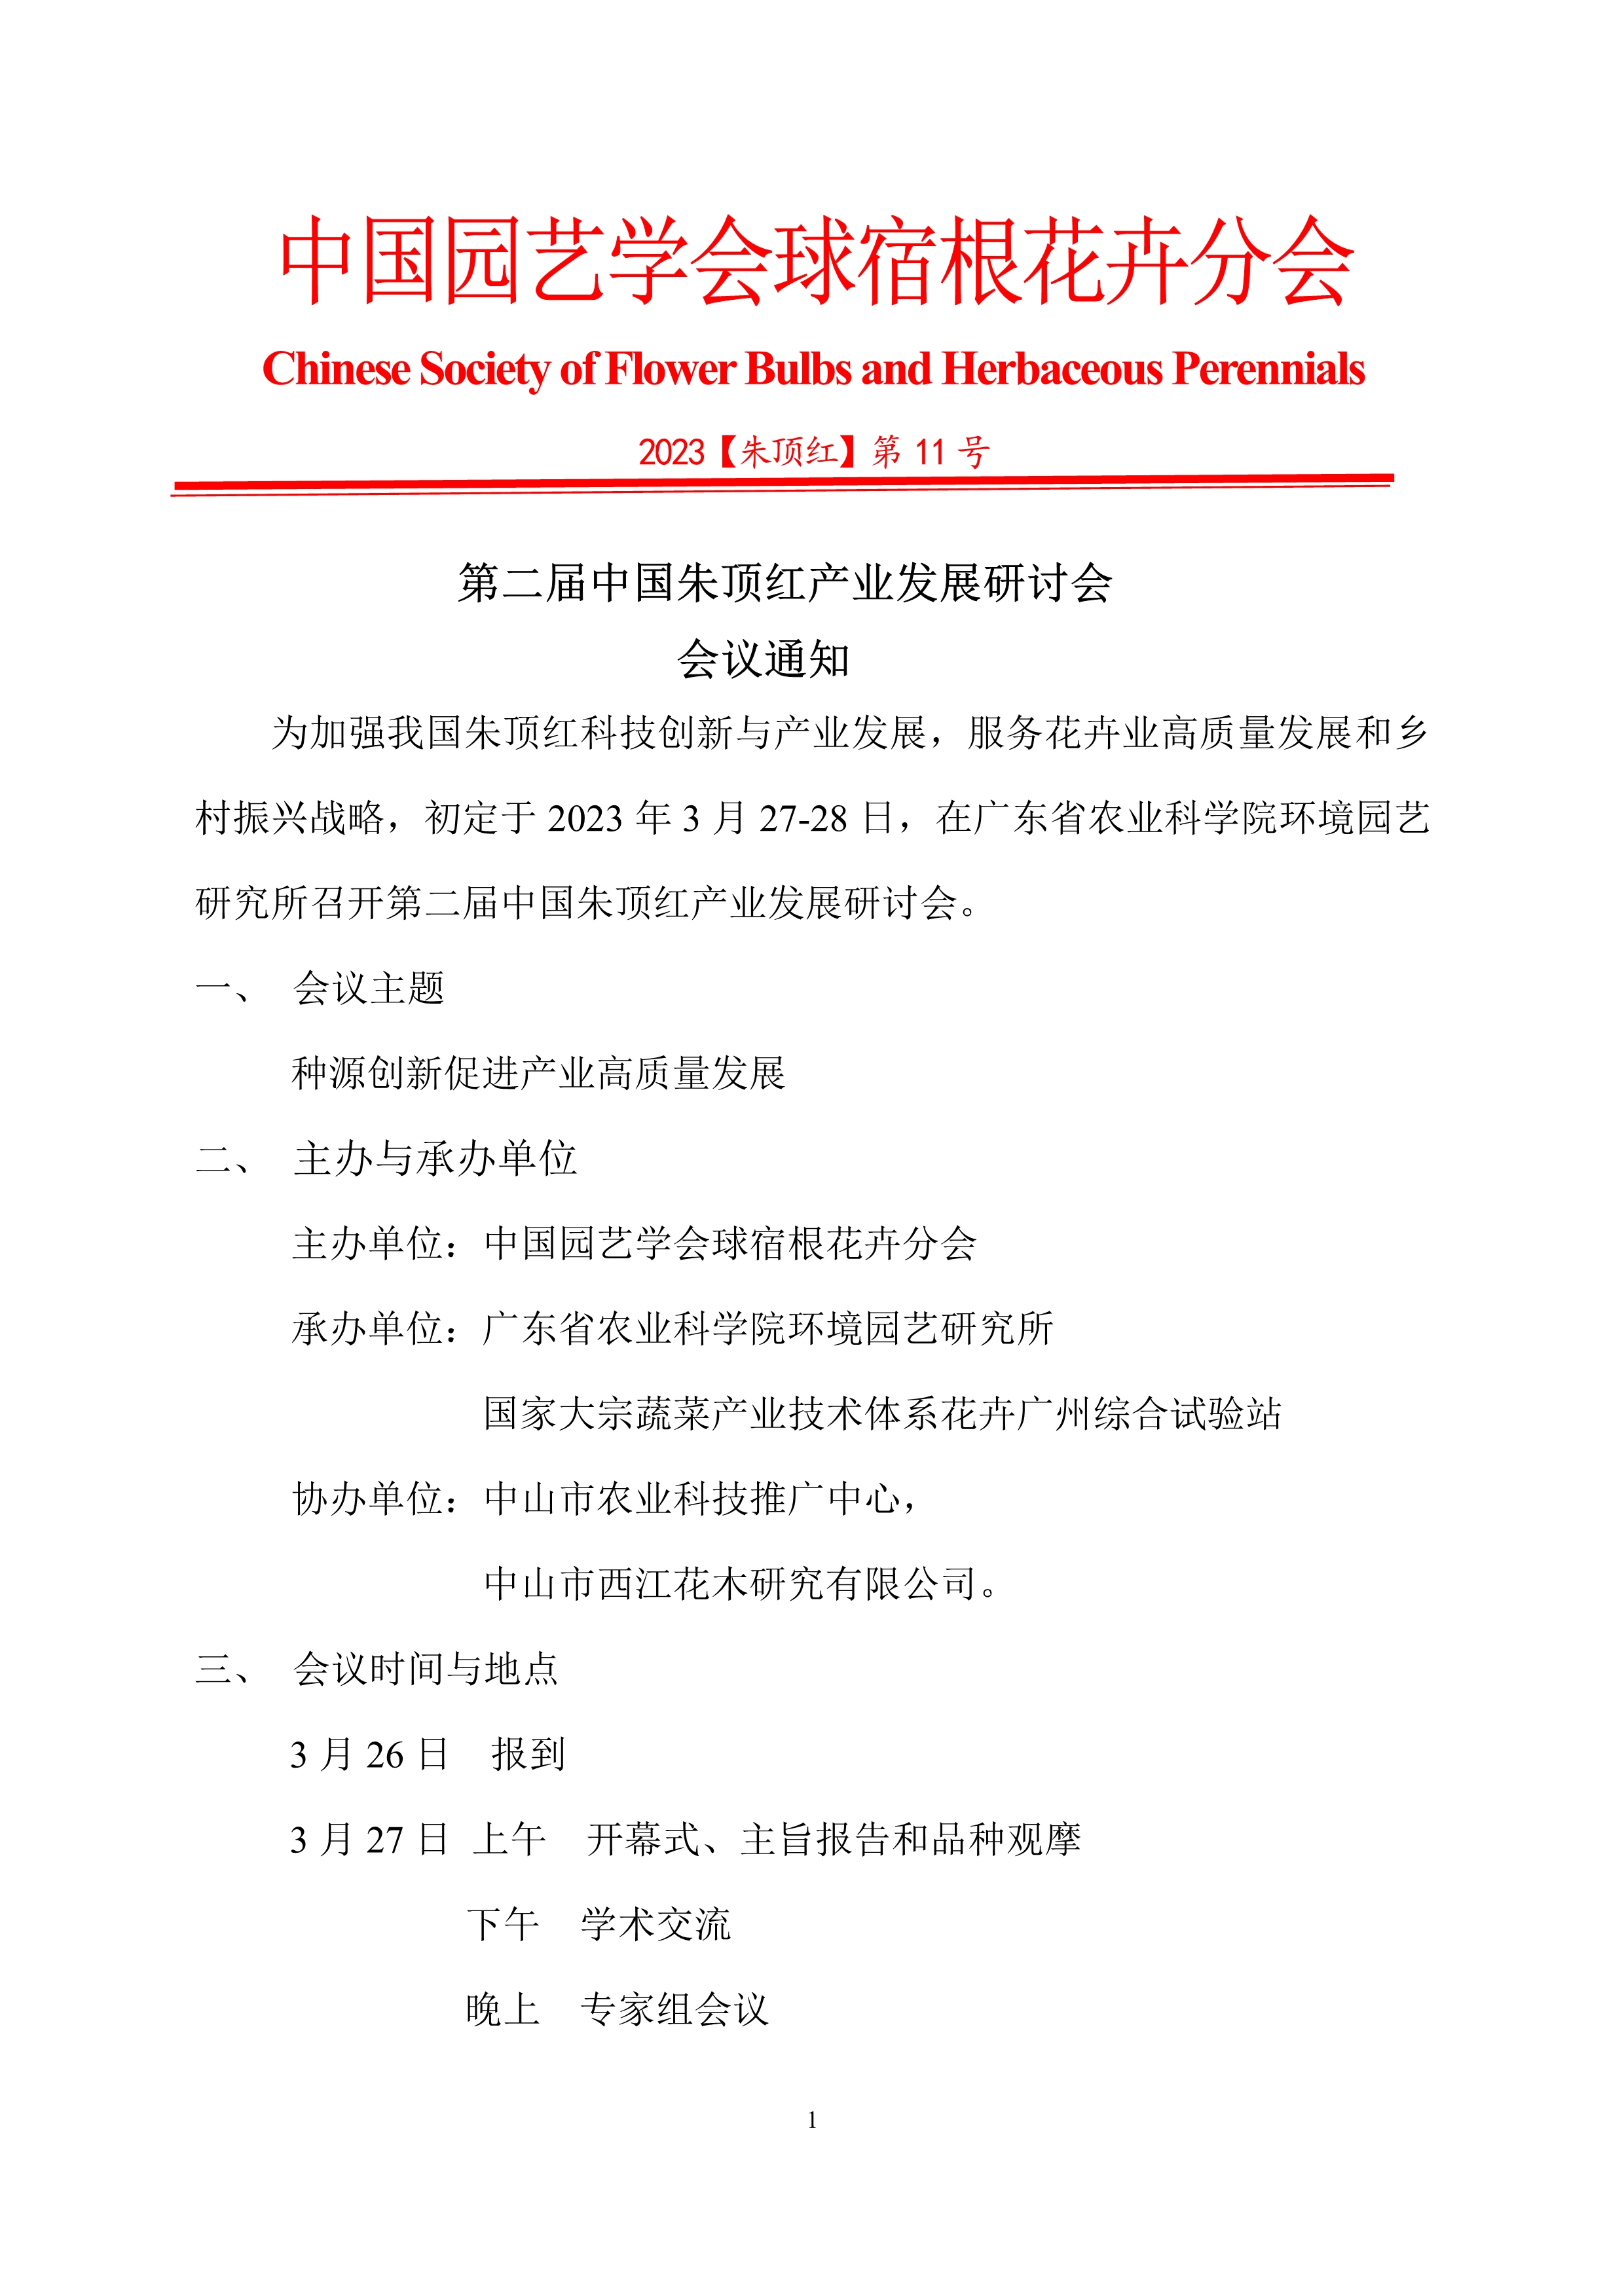 CSBP 第二届中国朱顶红产业发展研讨会20230305(1)_1